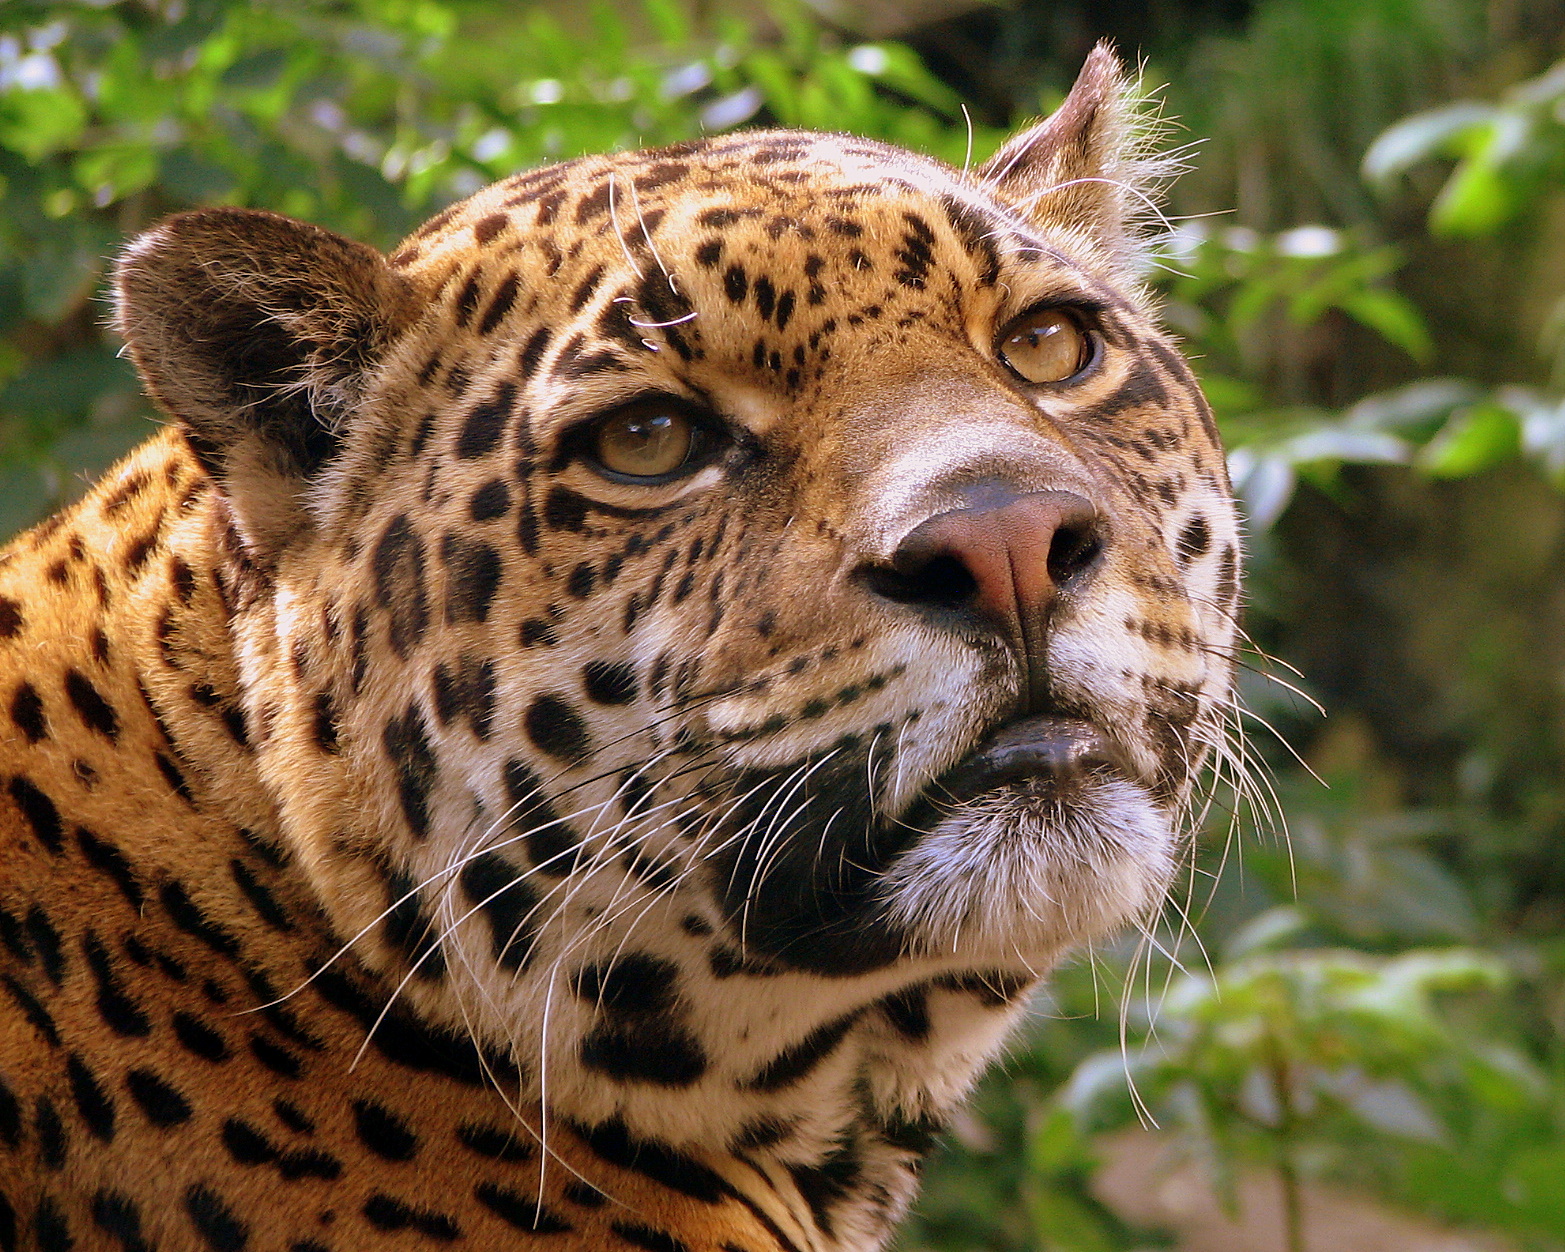 File:Jaguar at Edinburgh Zoo.jpg - Wikipedia